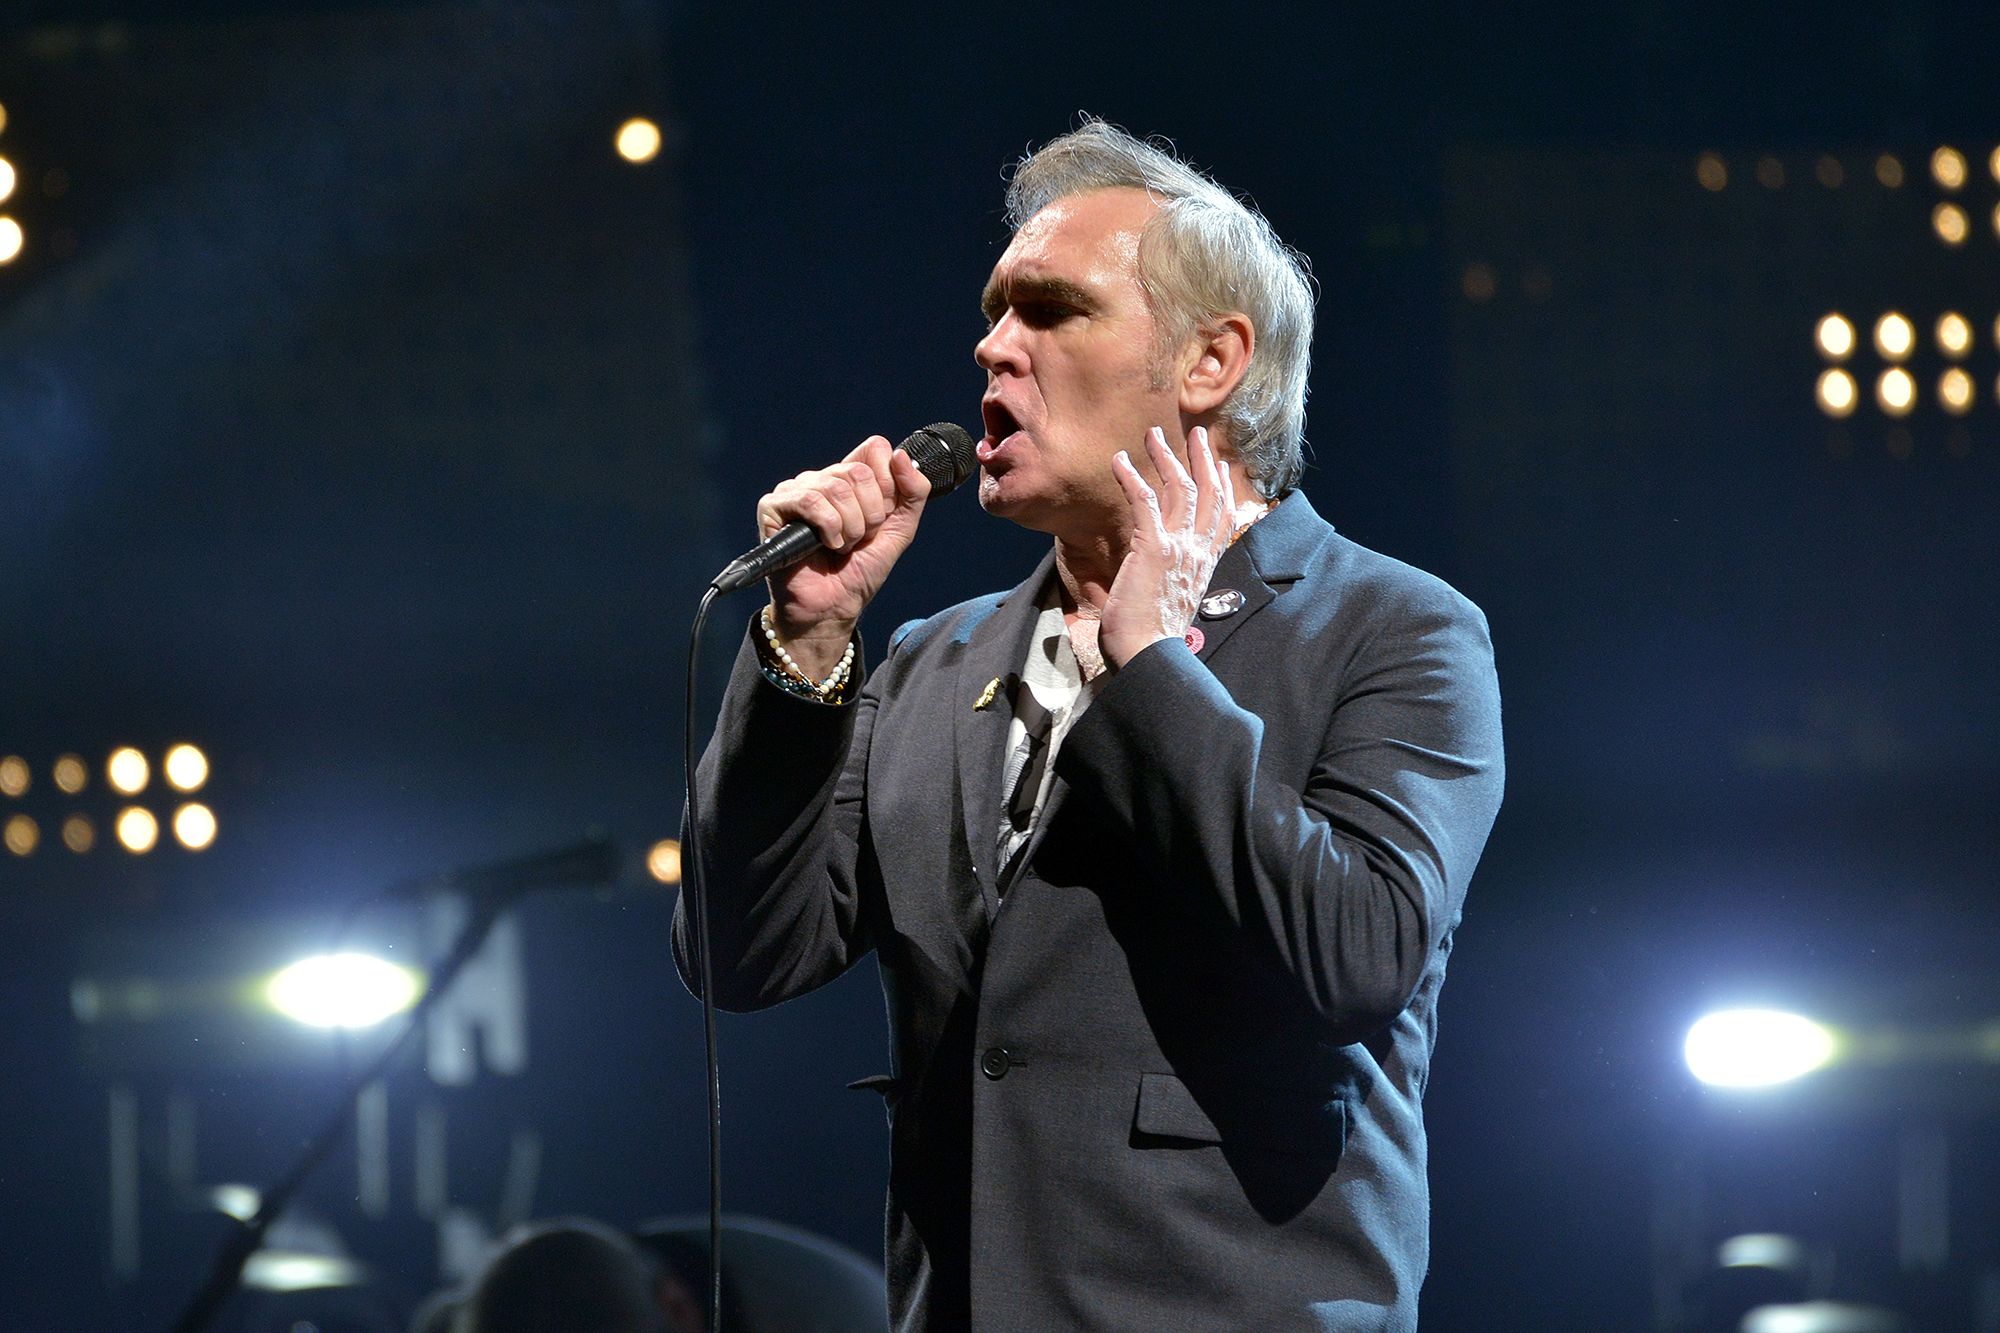 Morrissey upsets crowd after ending concert 30 minutes in | CNN